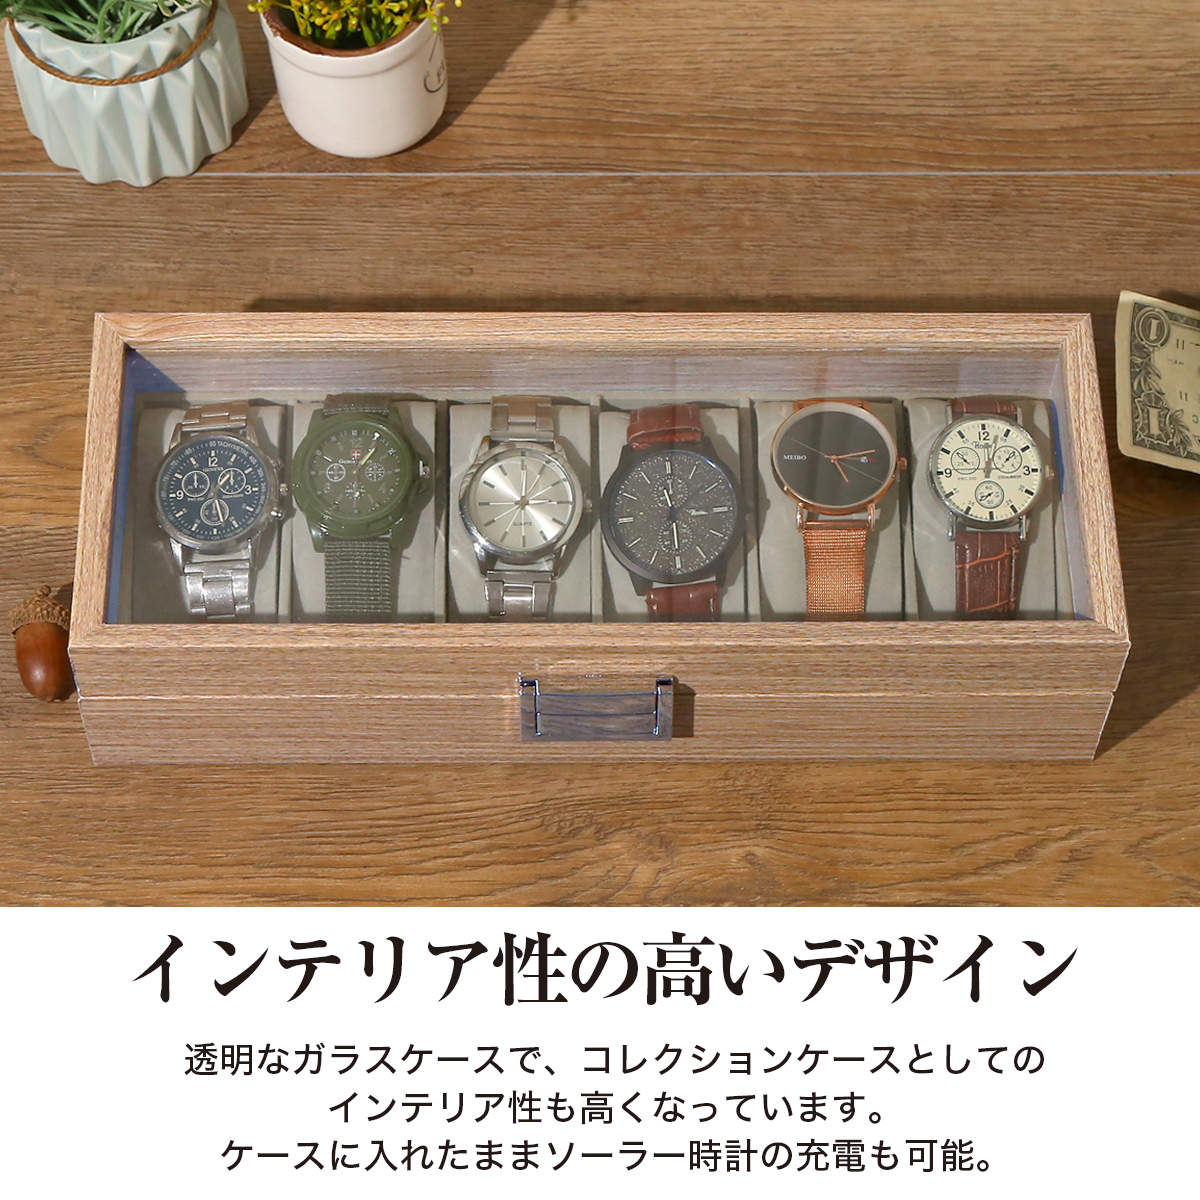 楽天市場 時計ケース 木製 腕時計 収納ケース 6本収納 高級ウォッチボックス プレゼント ギフト インテリア コレクション 腕時計ボックス ウォッチ ケース ディスプレイ 展示 メンズ レディース おしゃれ Steyk